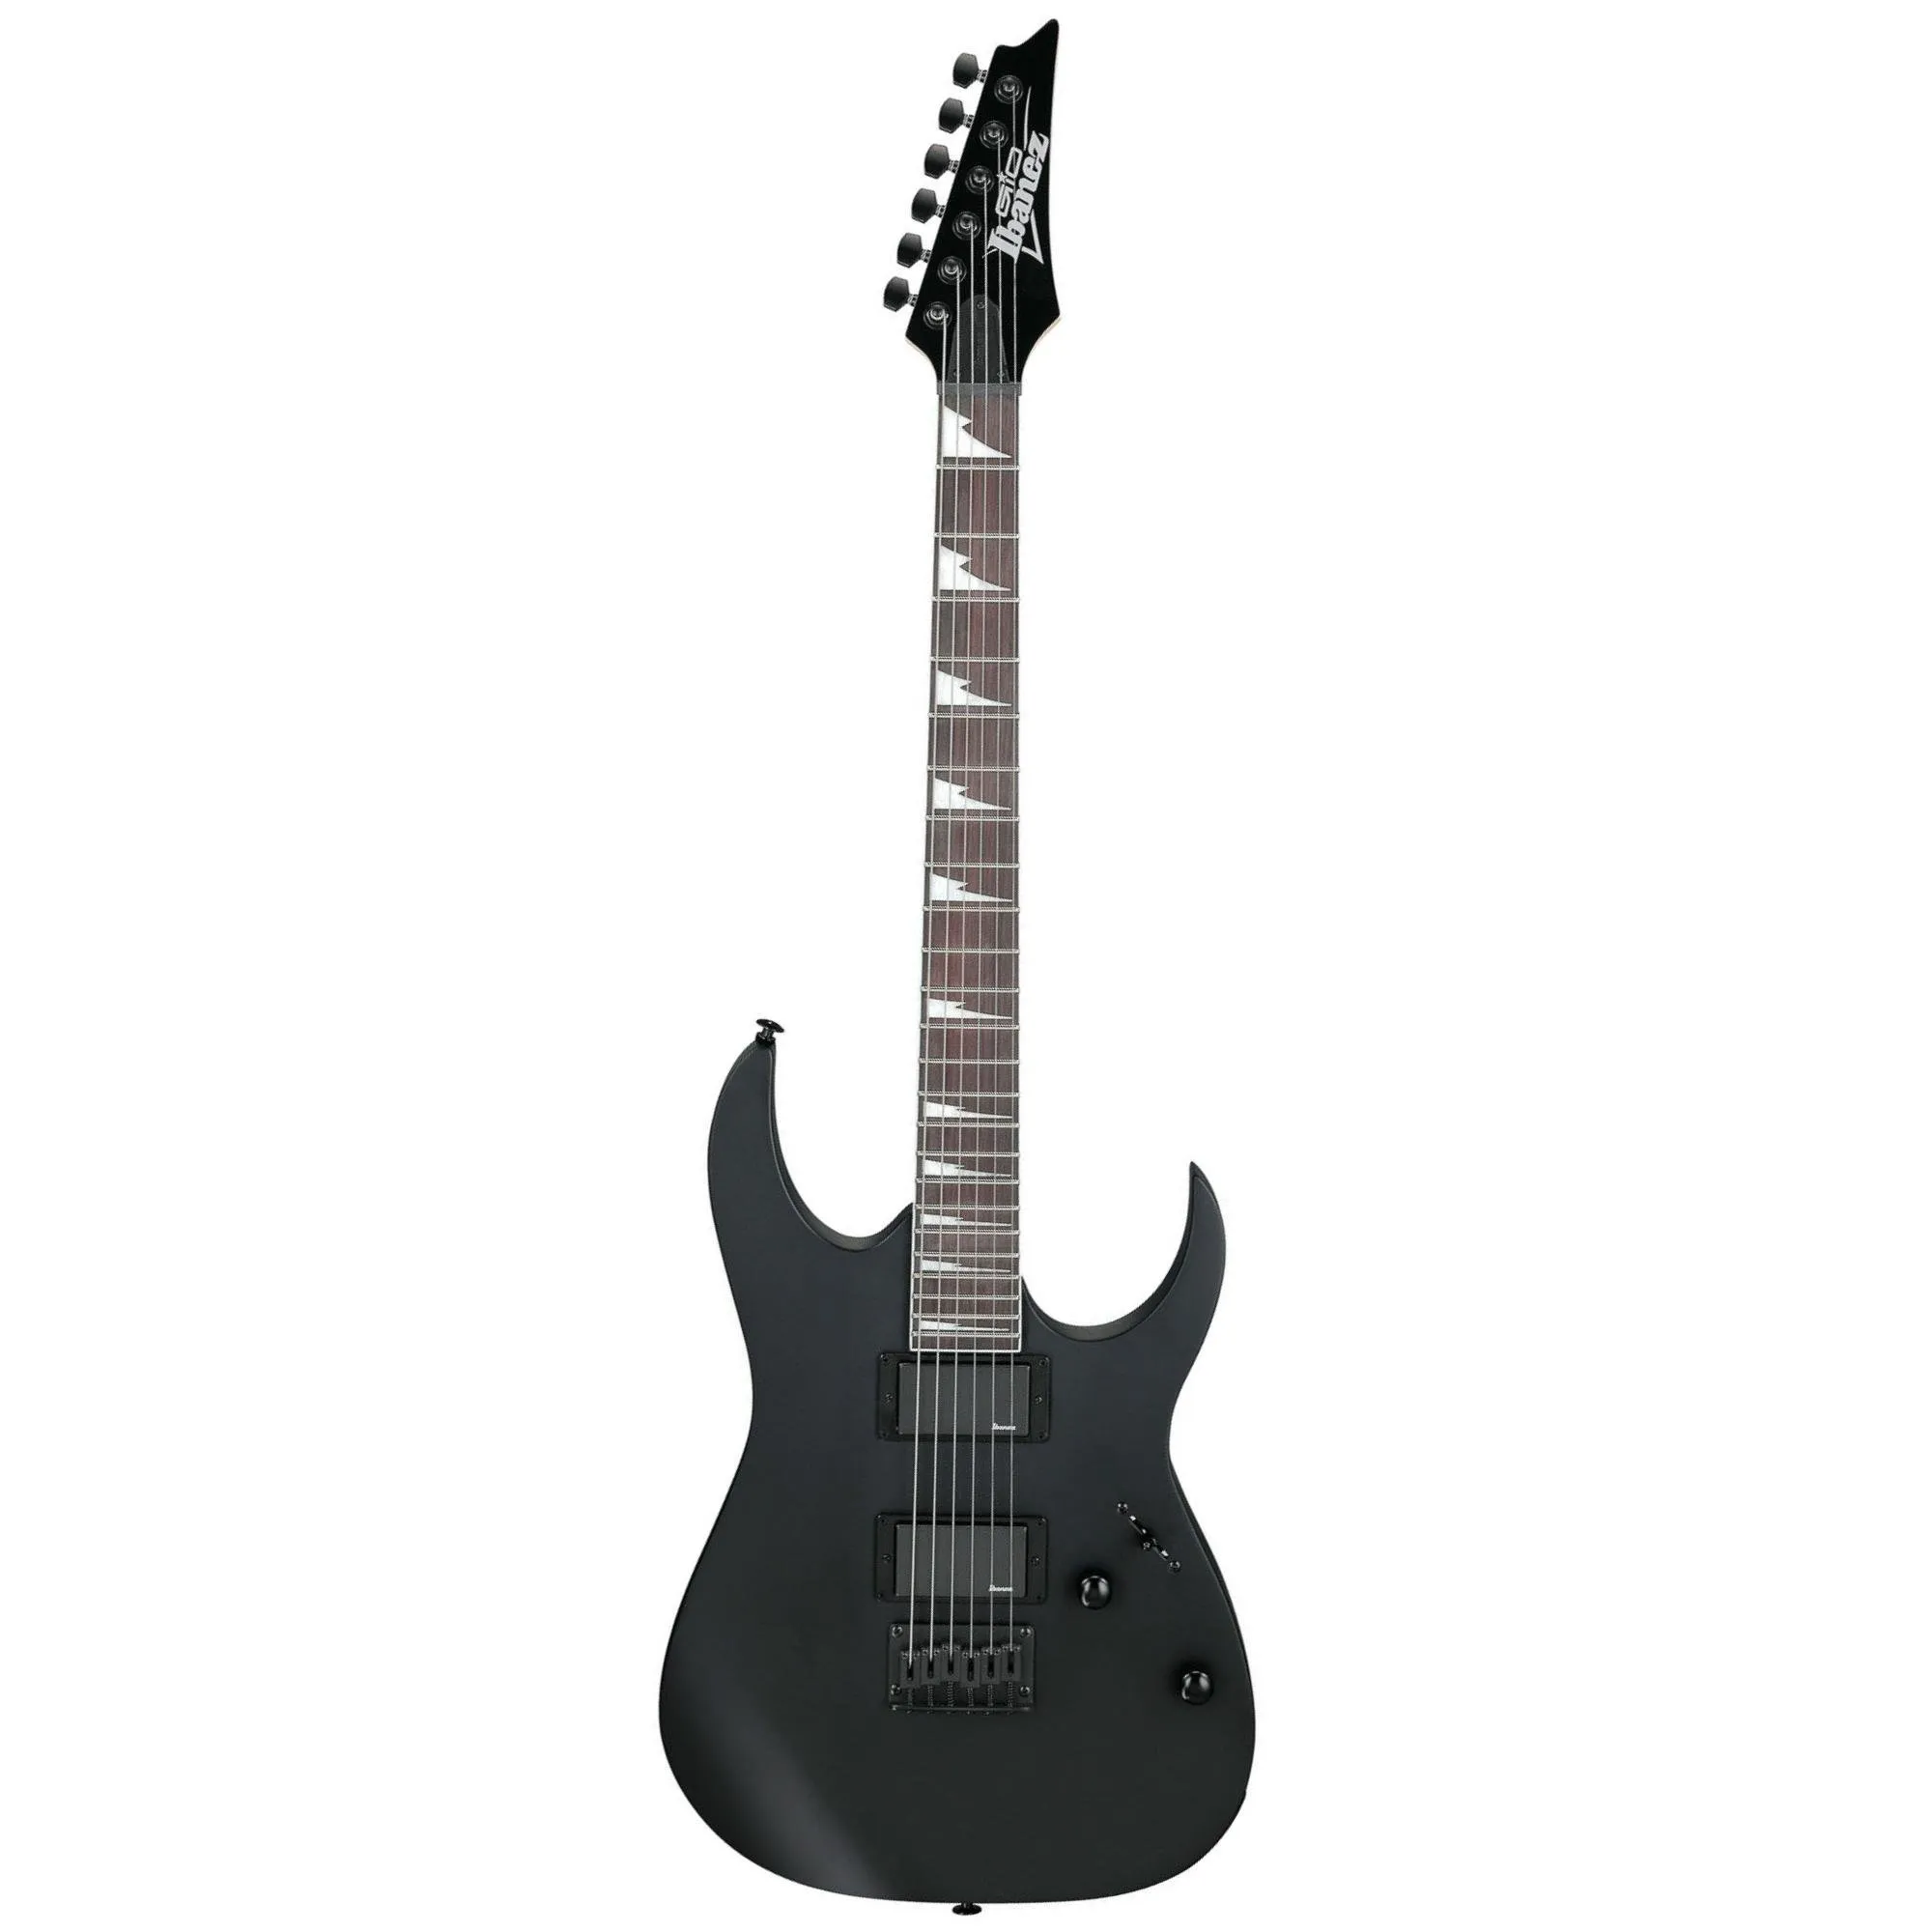 Guitarra Ibanez GRG121DX RG-GIO Black Flat por 2.299,99 à vista no boleto/pix ou parcele em até 12x sem juros. Compre na loja Mundomax!